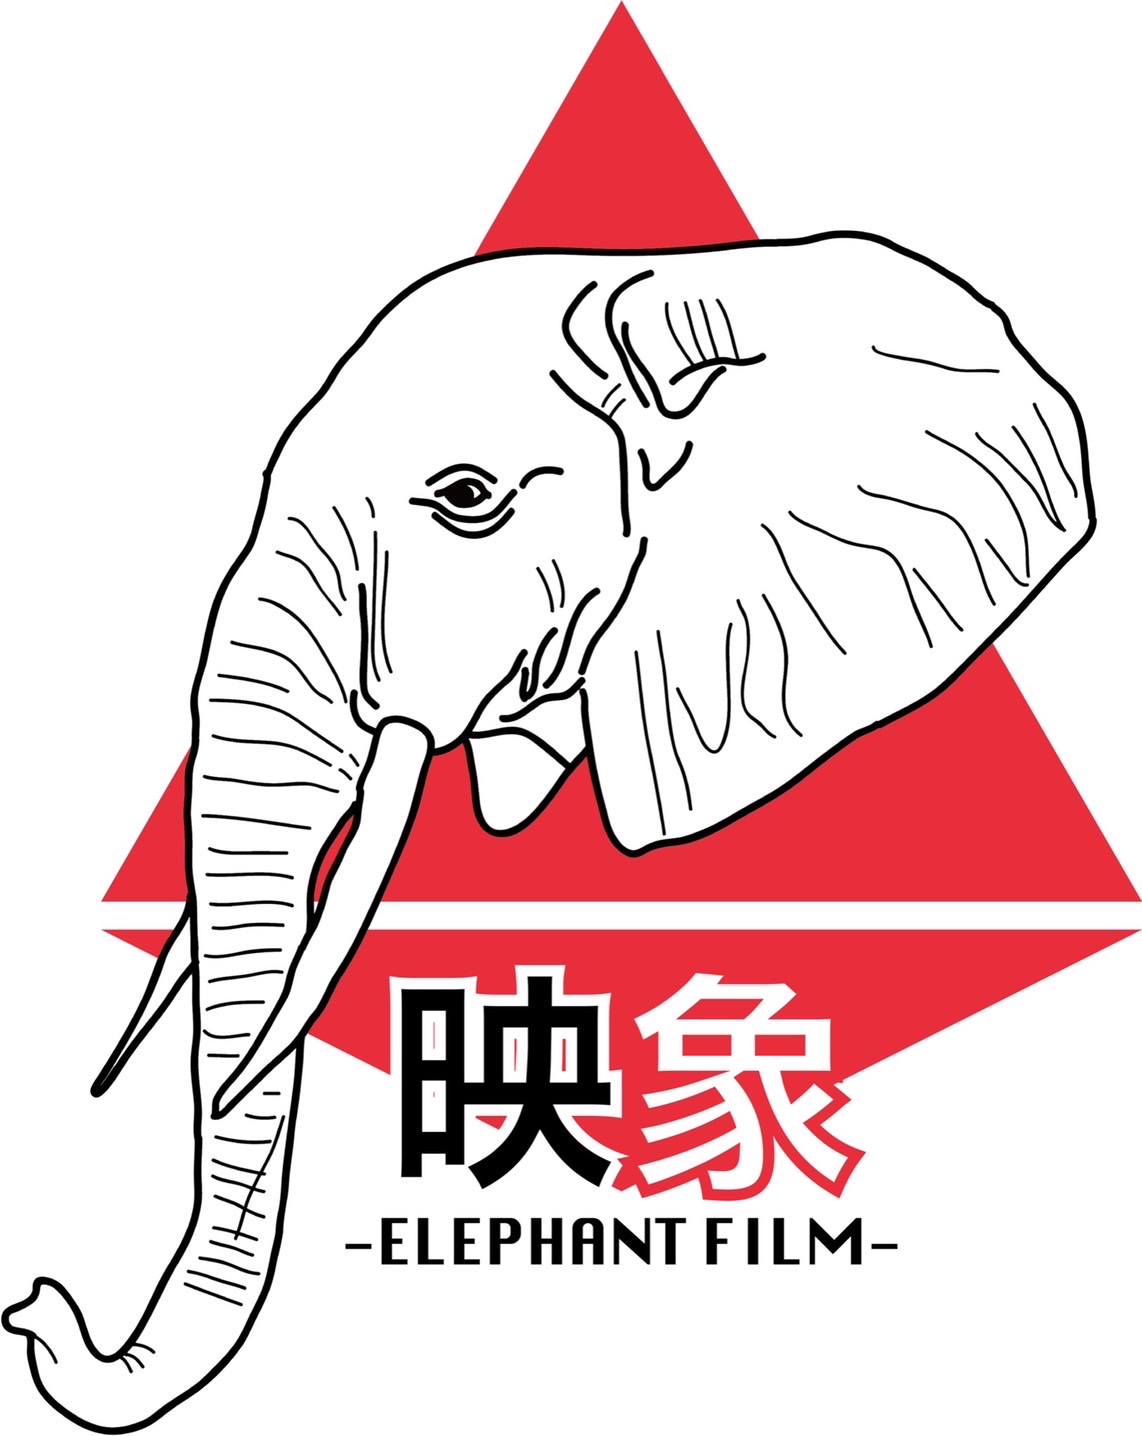 ELEPHANT FILM